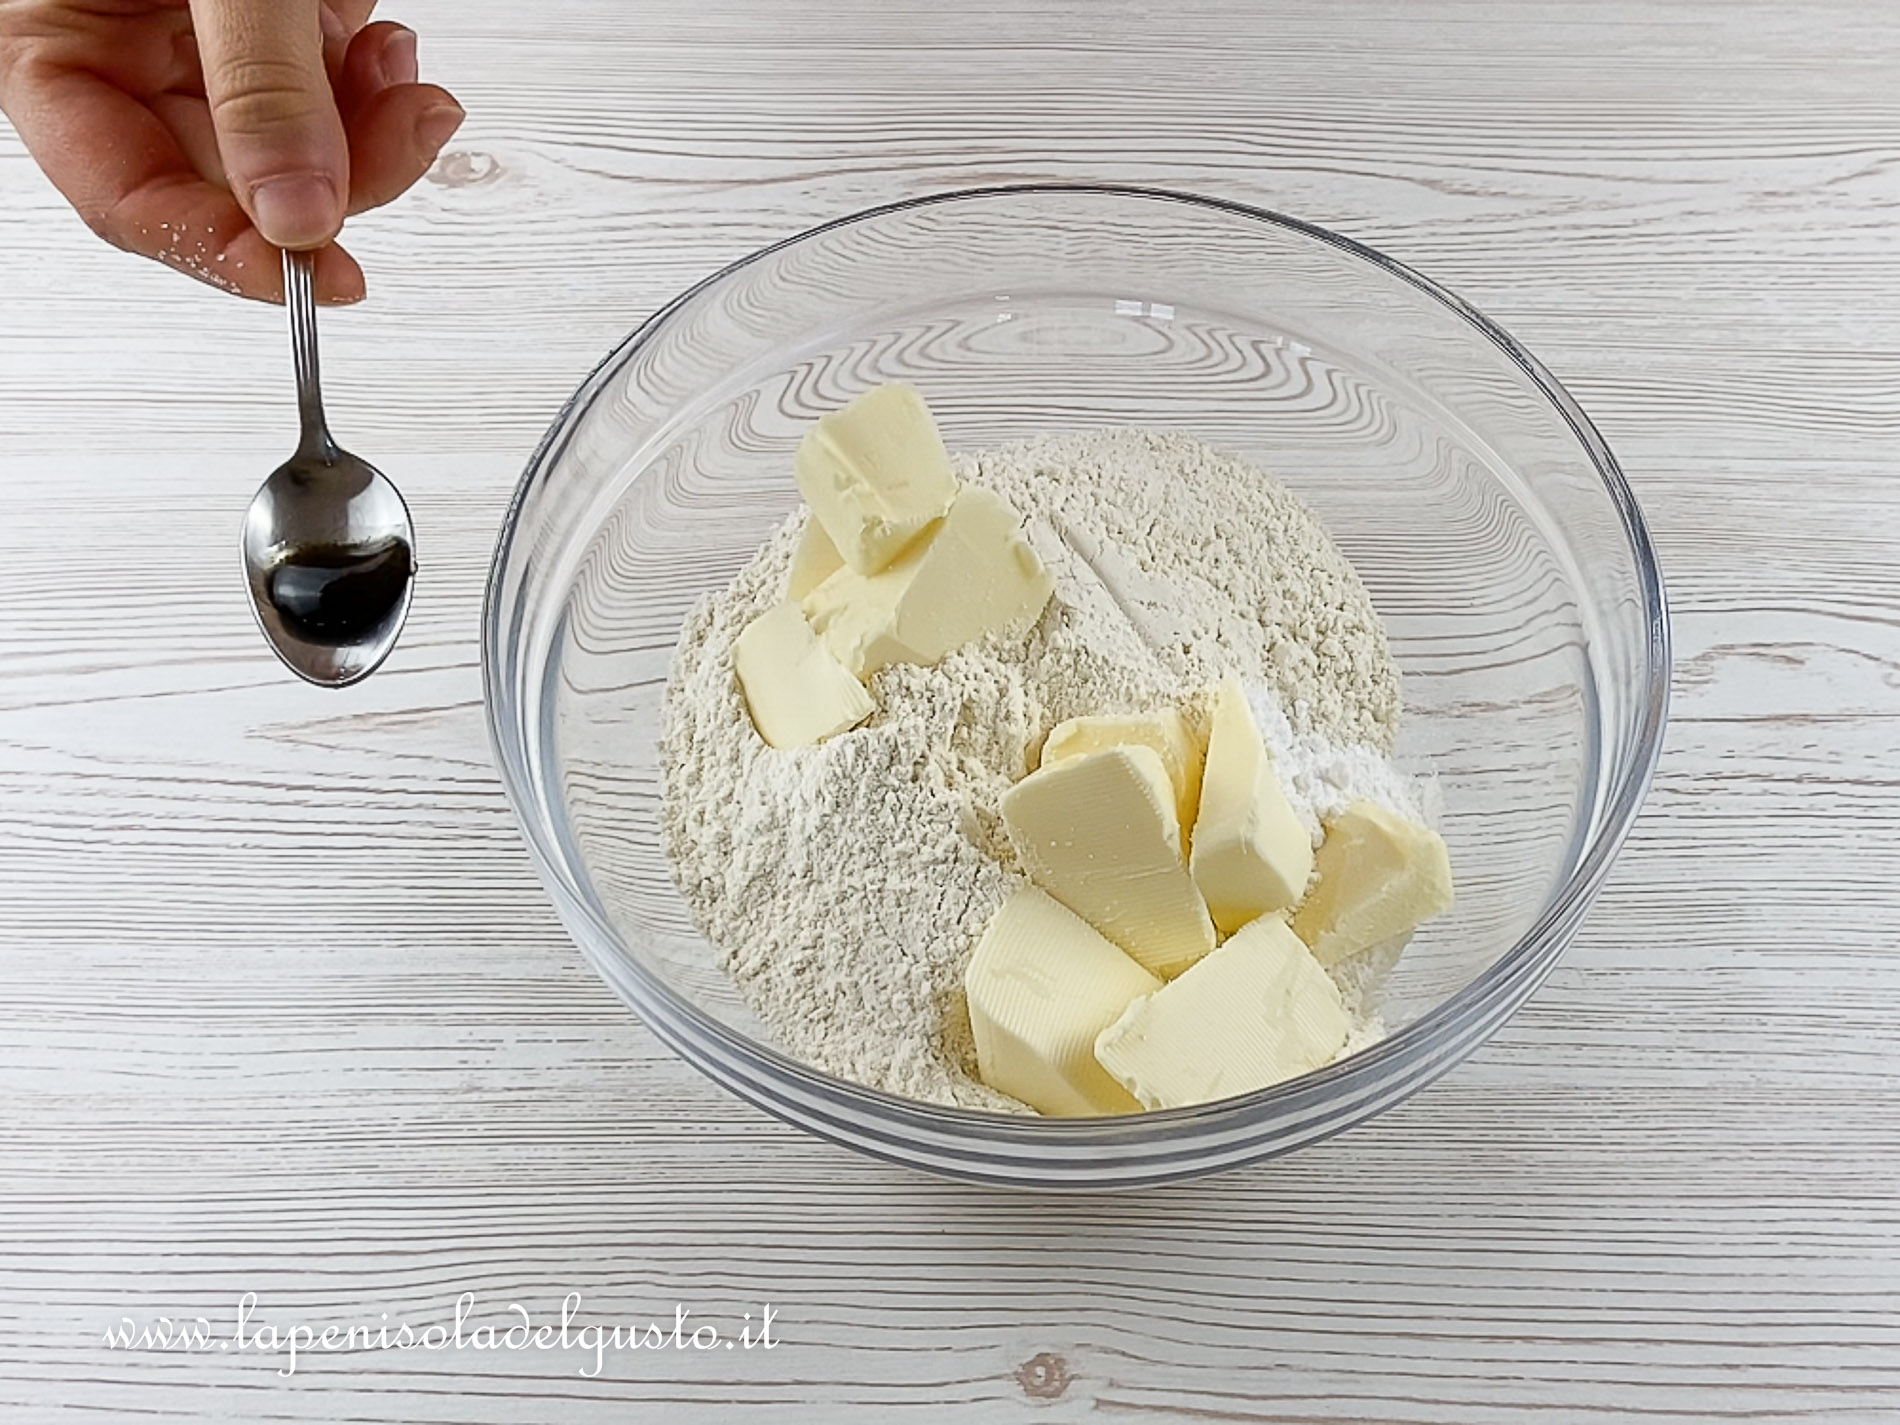 preparo impasto sbriciolata pasta frolla con uova farina burro vaniglia friabile e profumata